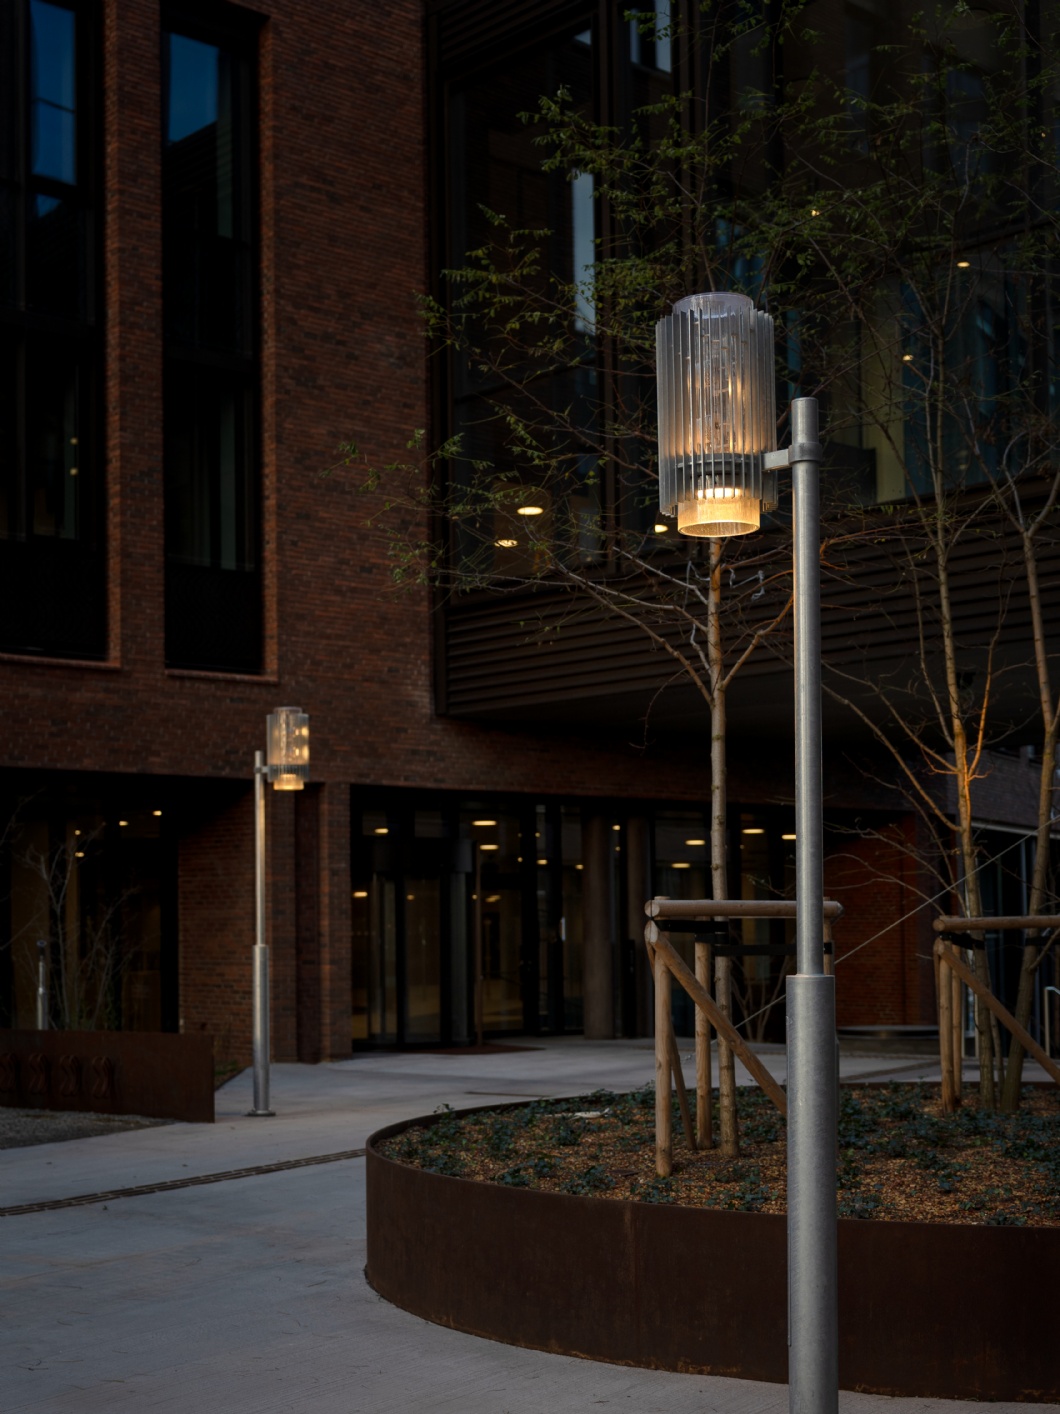 Individuelle Beleuchtung für das lebendige Stadtviertel – Postbyen in Kopenhagen 6